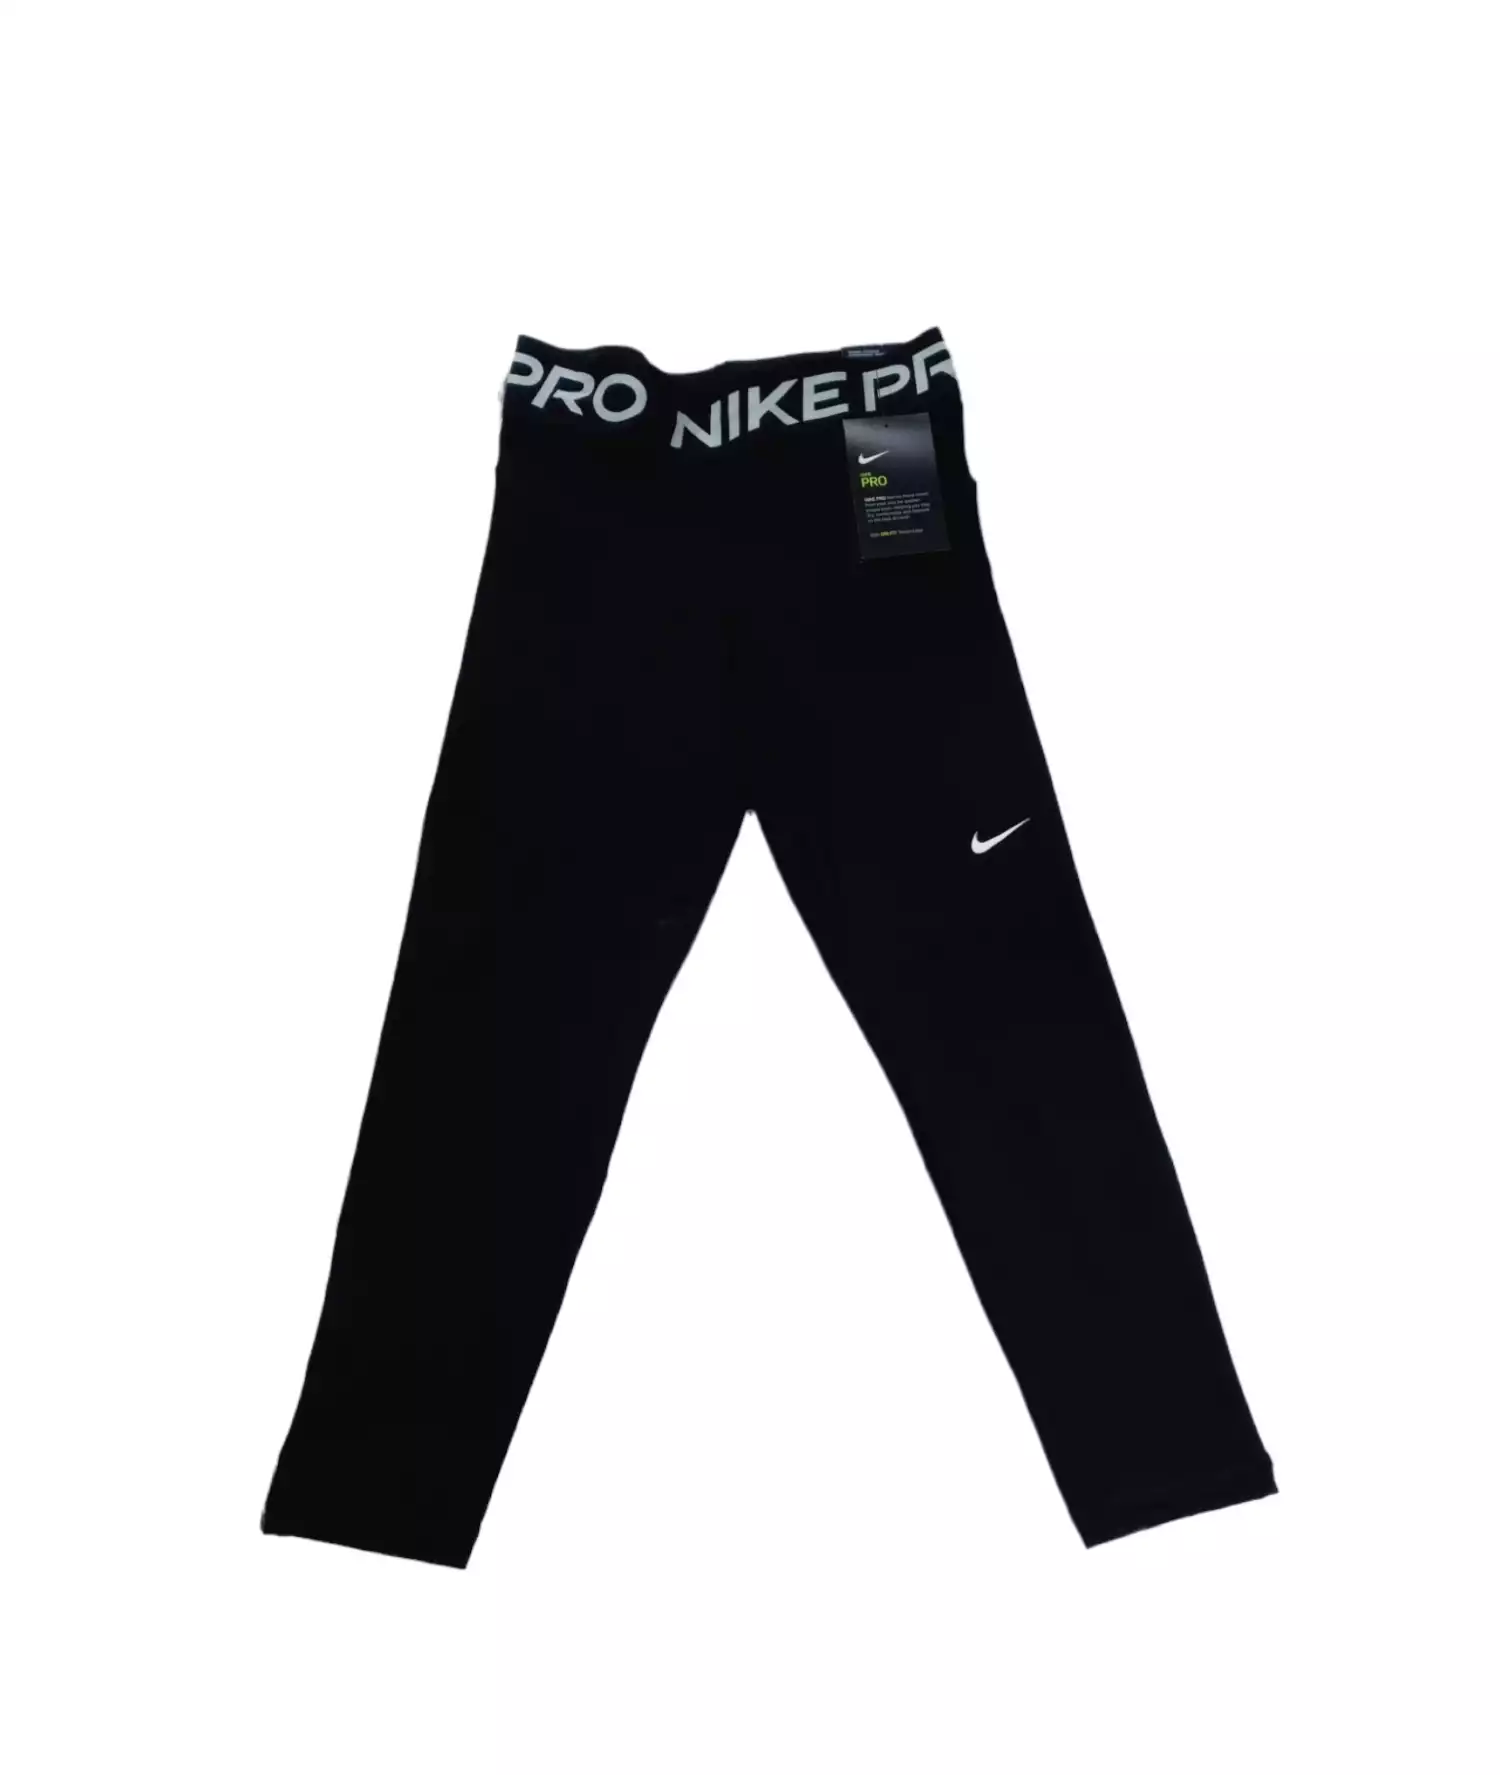 Leggings by Nike